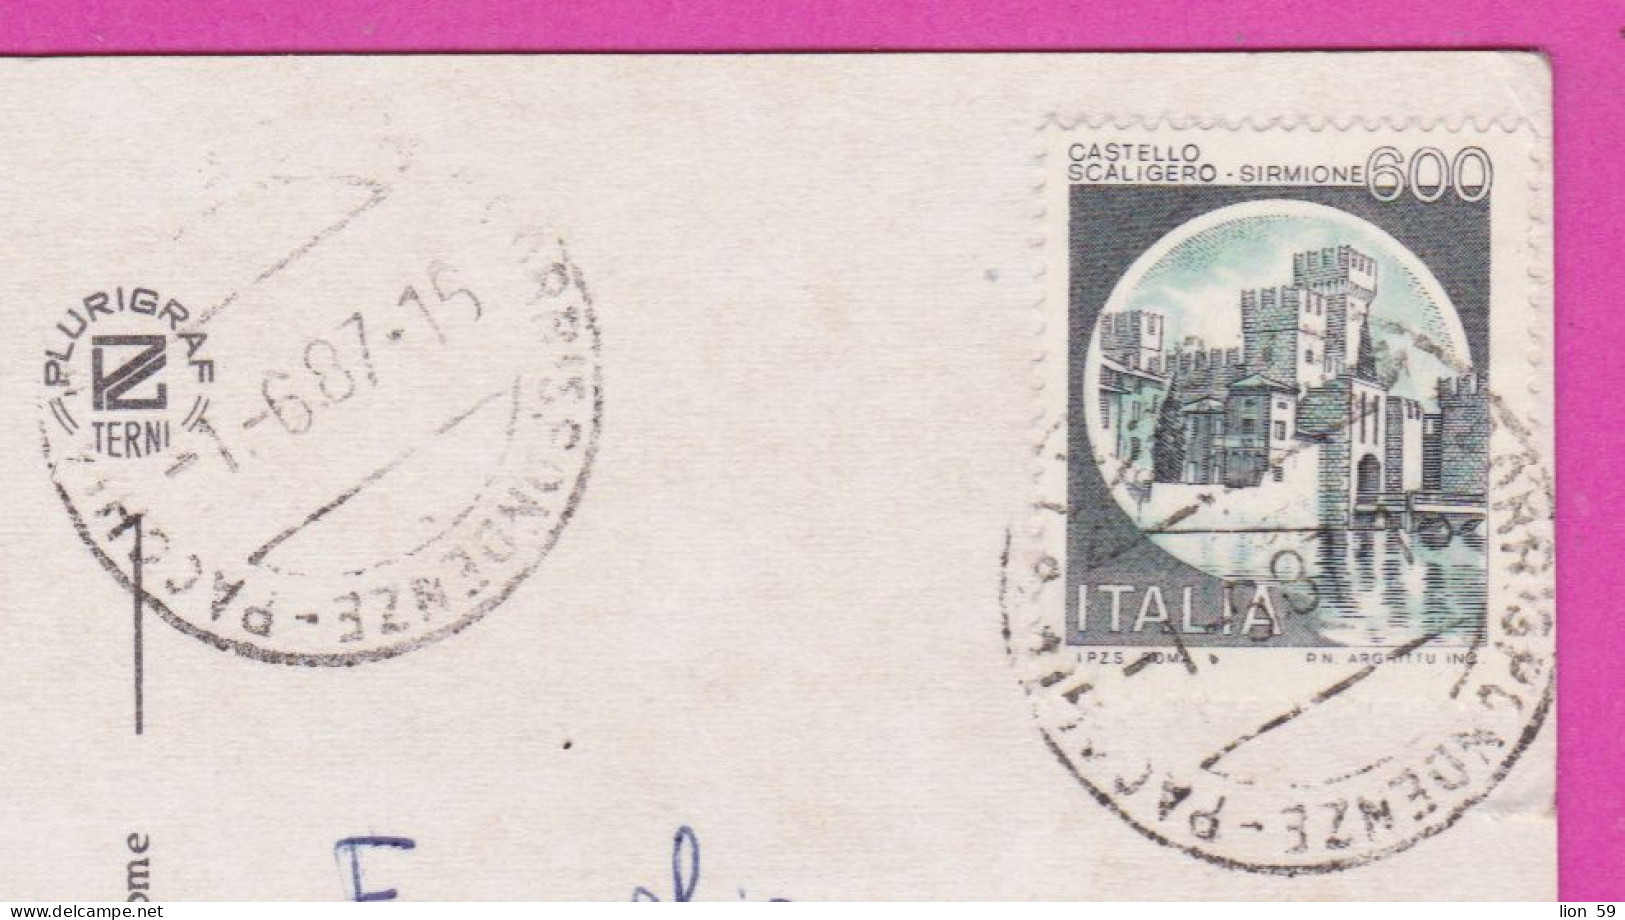 293885 / Italy - Macerata 5 View Panorama PC 1987 USED 600 L Castello Scaligero Di Sirmione , Castle Italia Italie - 1981-90: Marcofilia